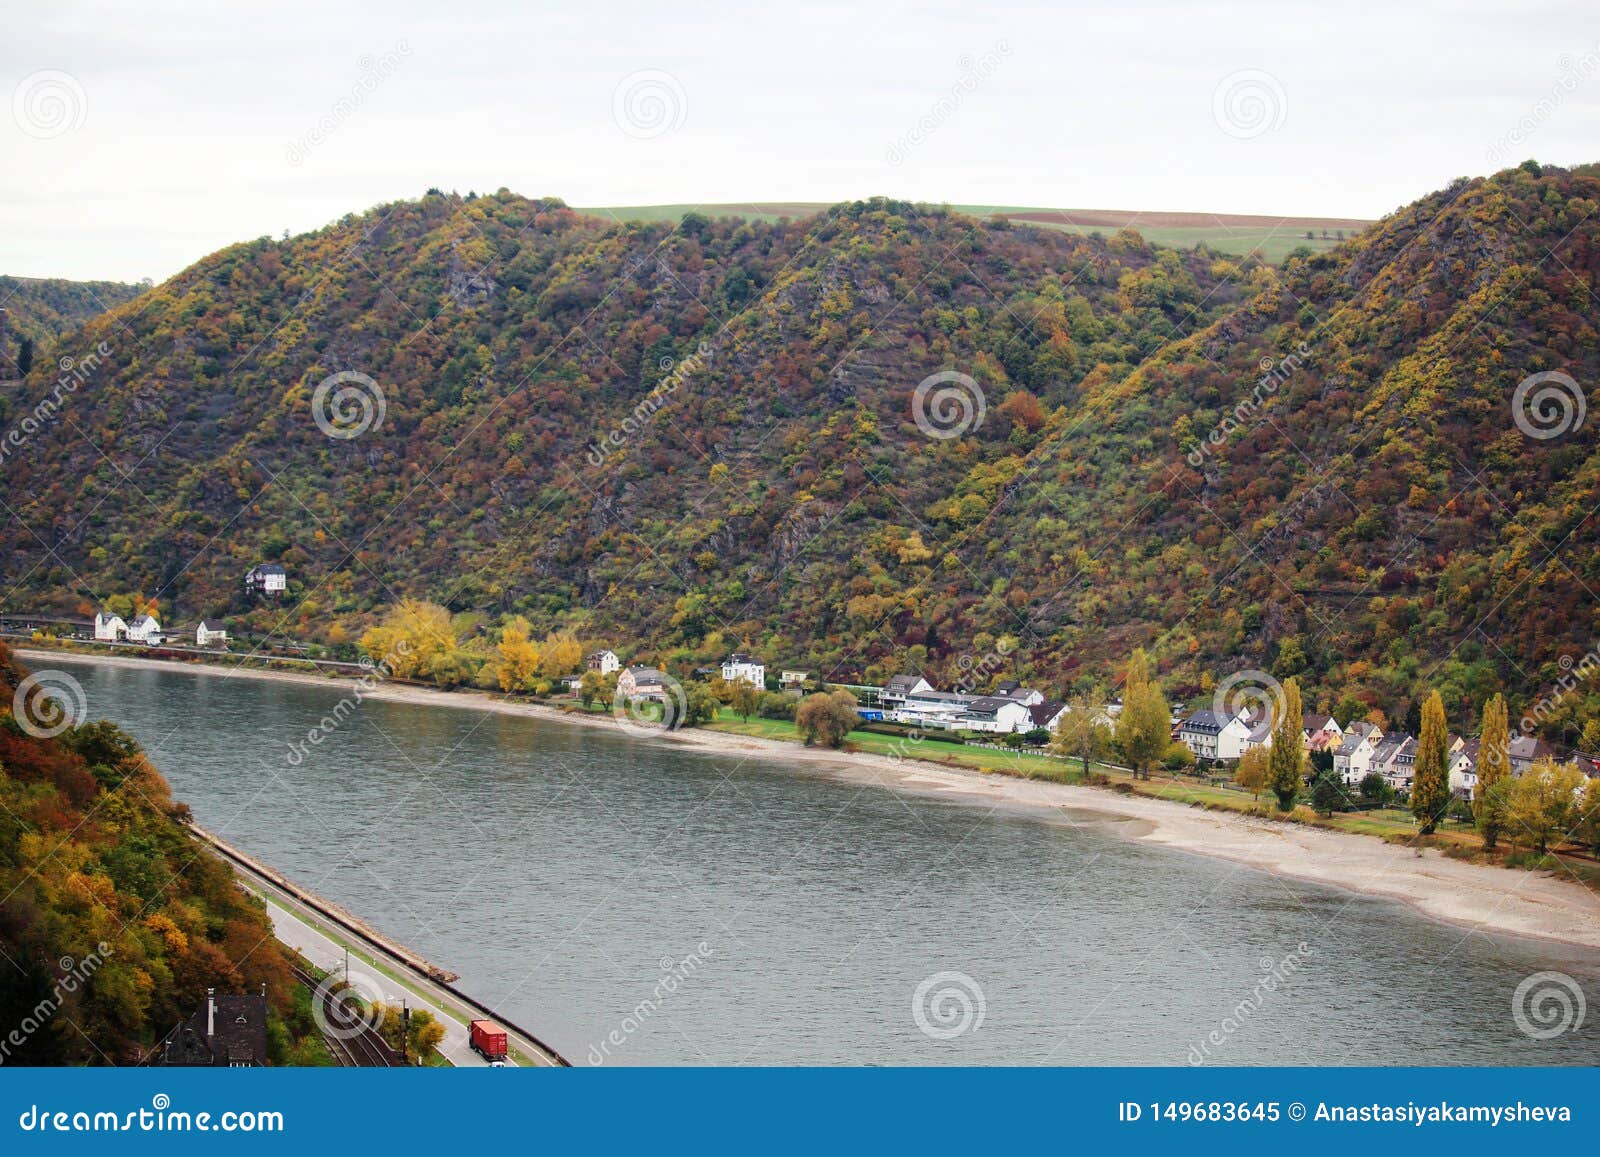 view from loreleyblick wanderweg to sankt goarhausen towns in the rhein river valley